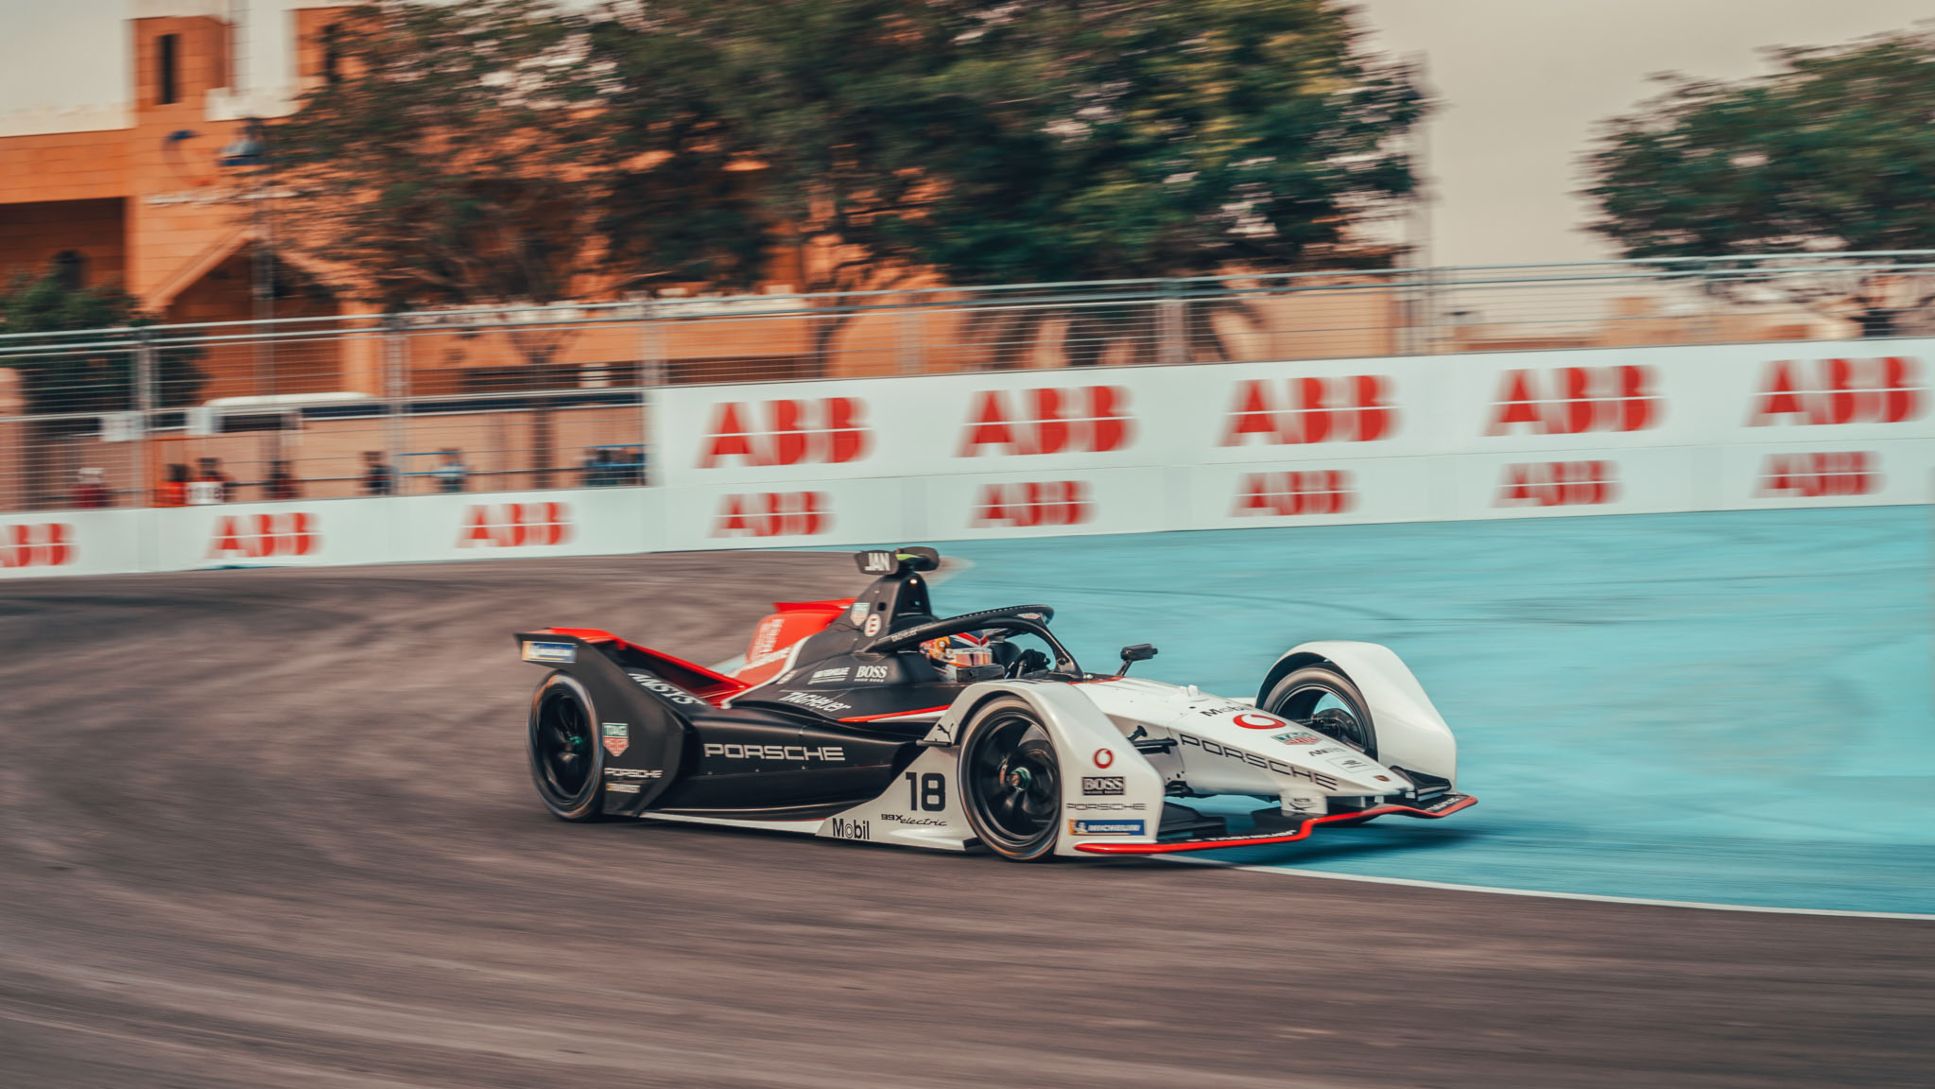 99X Electric, Diriyah E-Prix, primera prueba del Campeonato de Fórmula E ABB FIA 2019/2020, 2019, Porsche AG